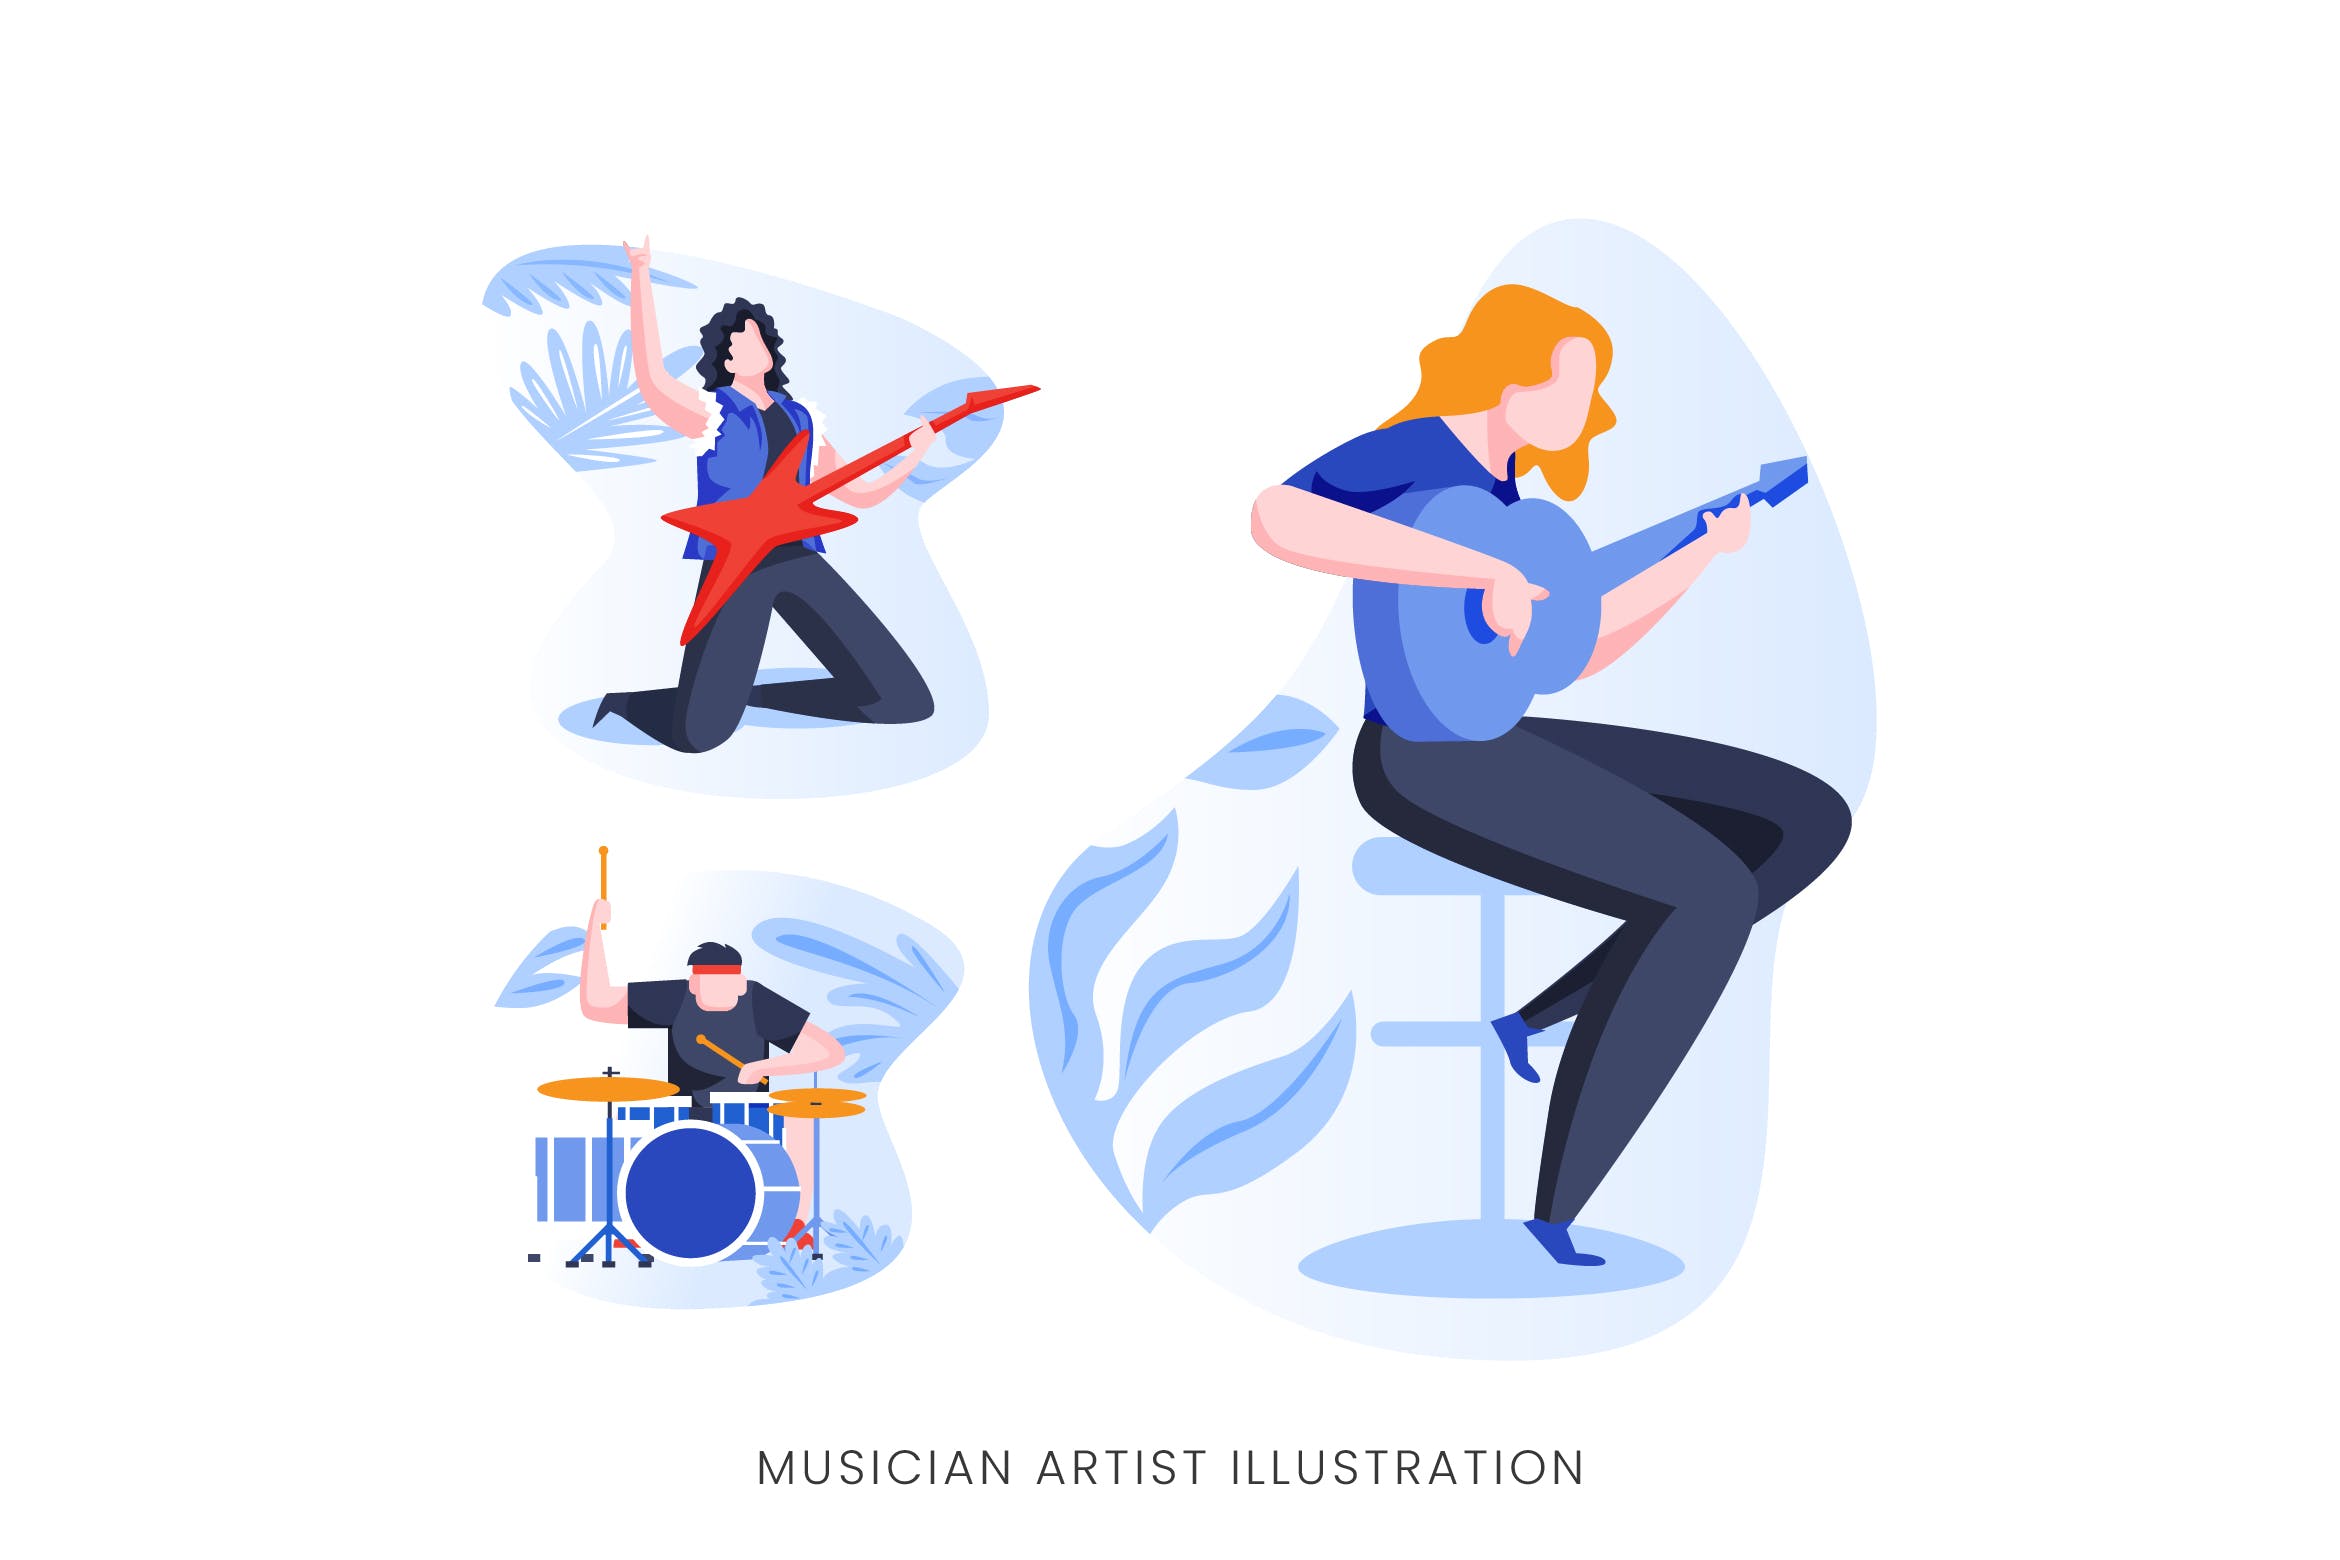 音乐家艺术家人物形象矢量手绘素材库精选设计素材 Musician Artist Vector Character Set插图